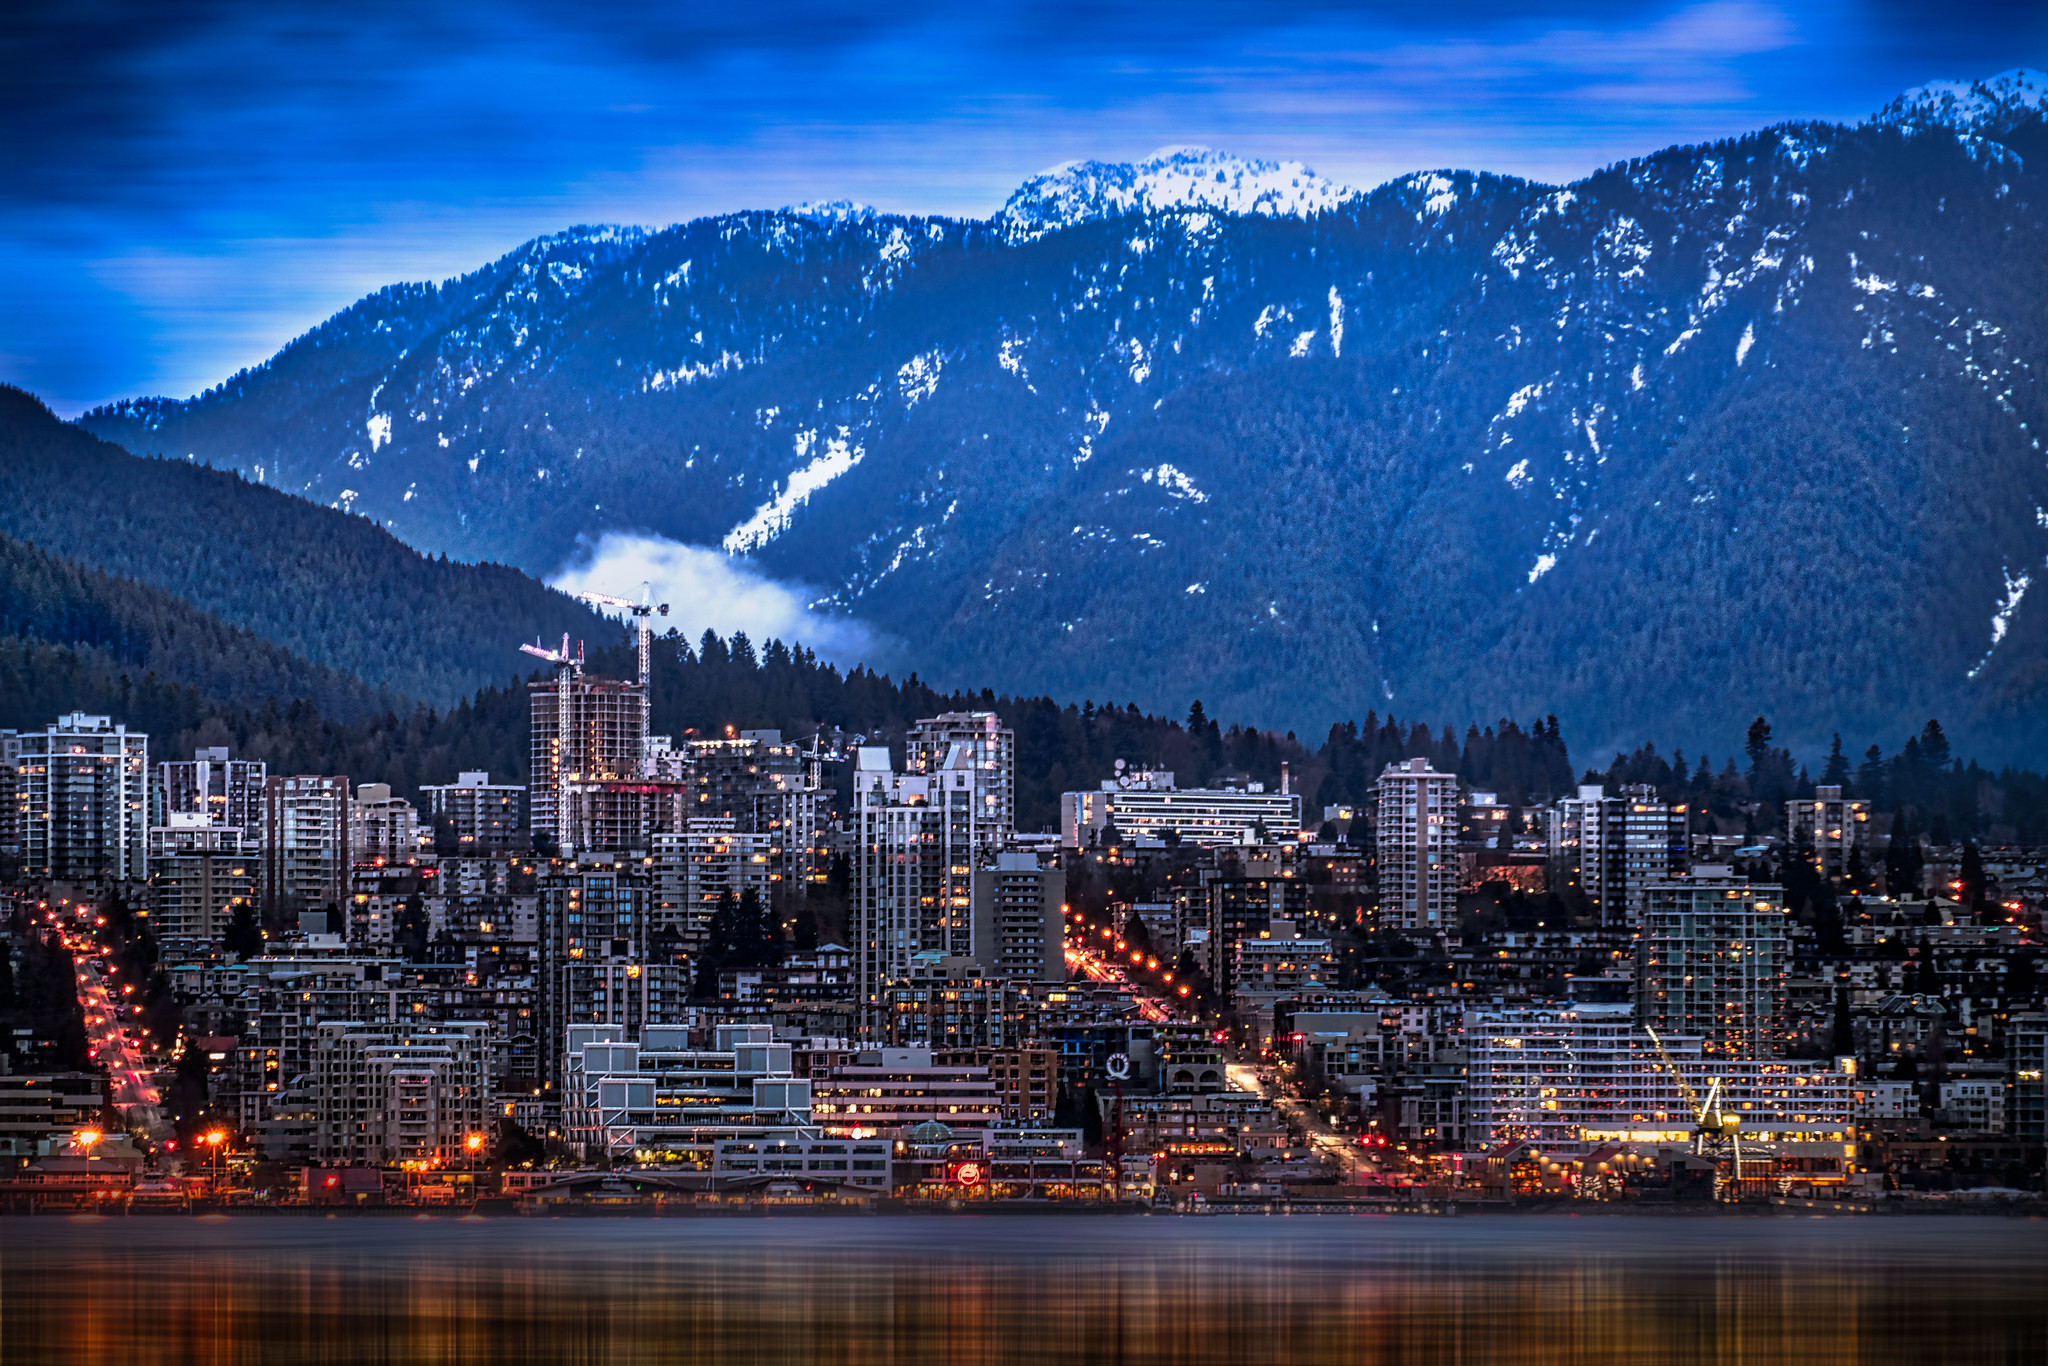 Bắc Vancouver trở thành thành phố đầu tiên được sưởi ấm bằng tái sử dụng nhiệt thải từ khai thác Bitcoin